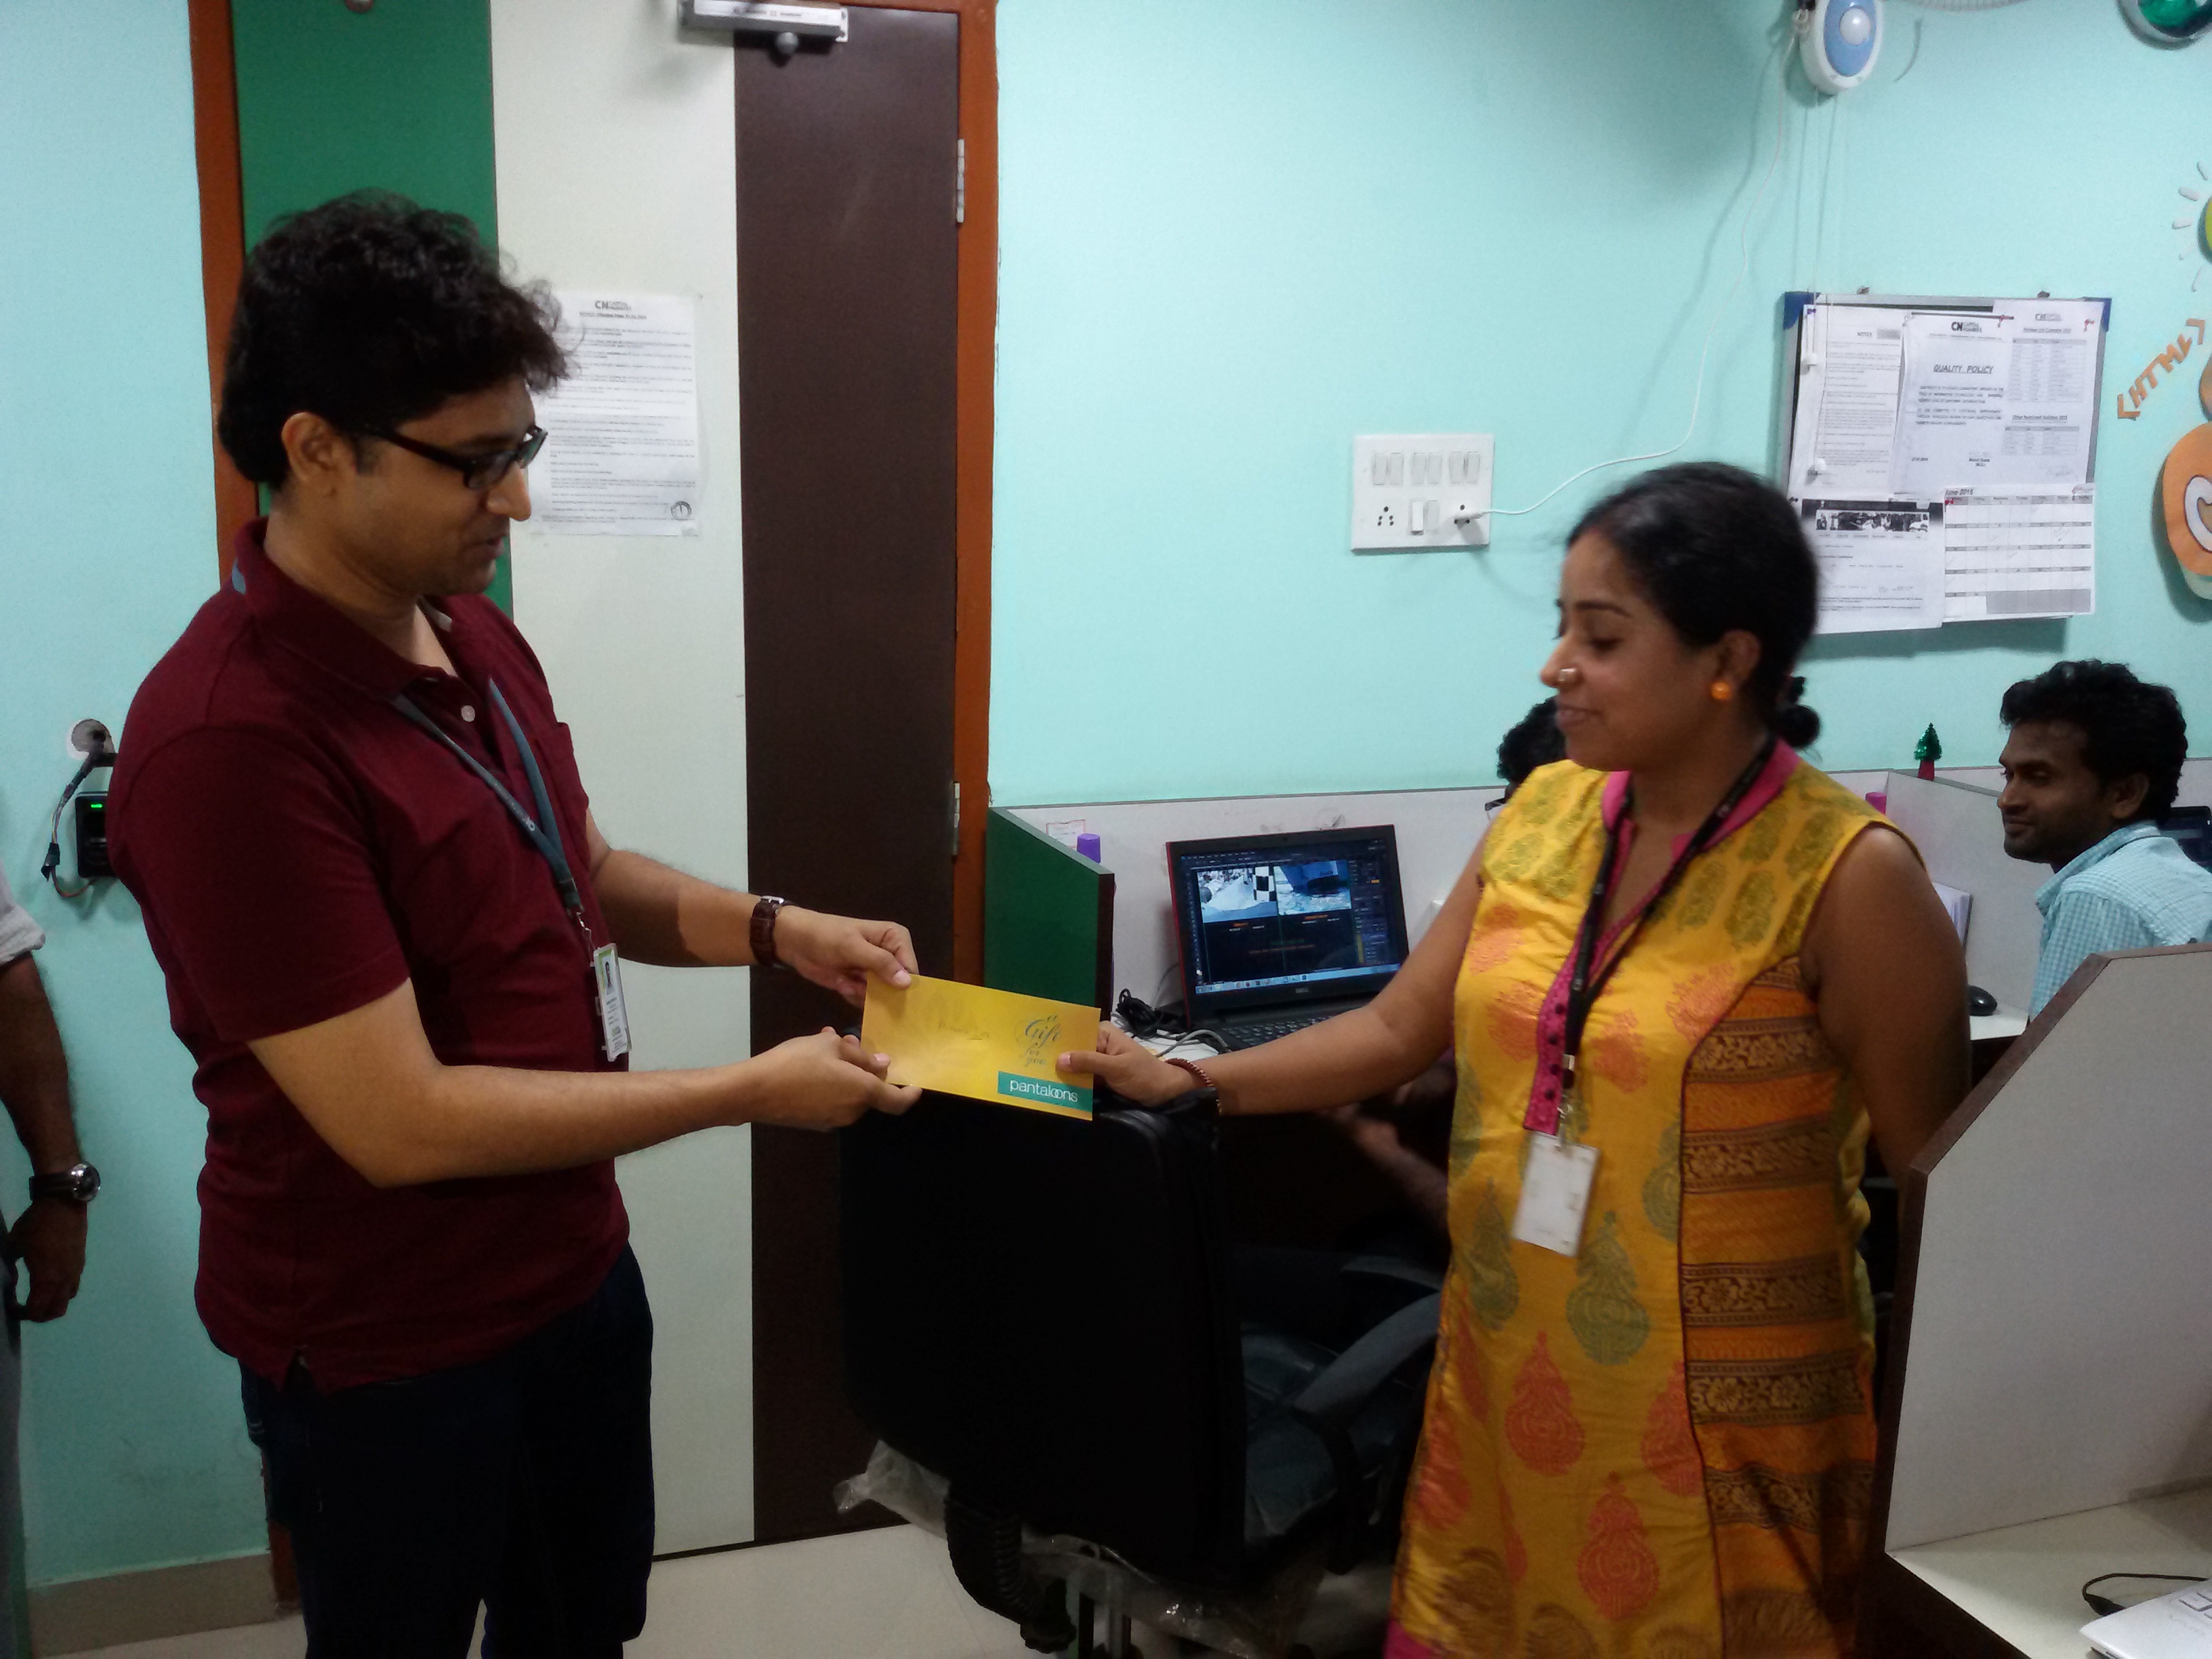 Priyaka Deb receiving 1st Prize from Anindya Mukherjee